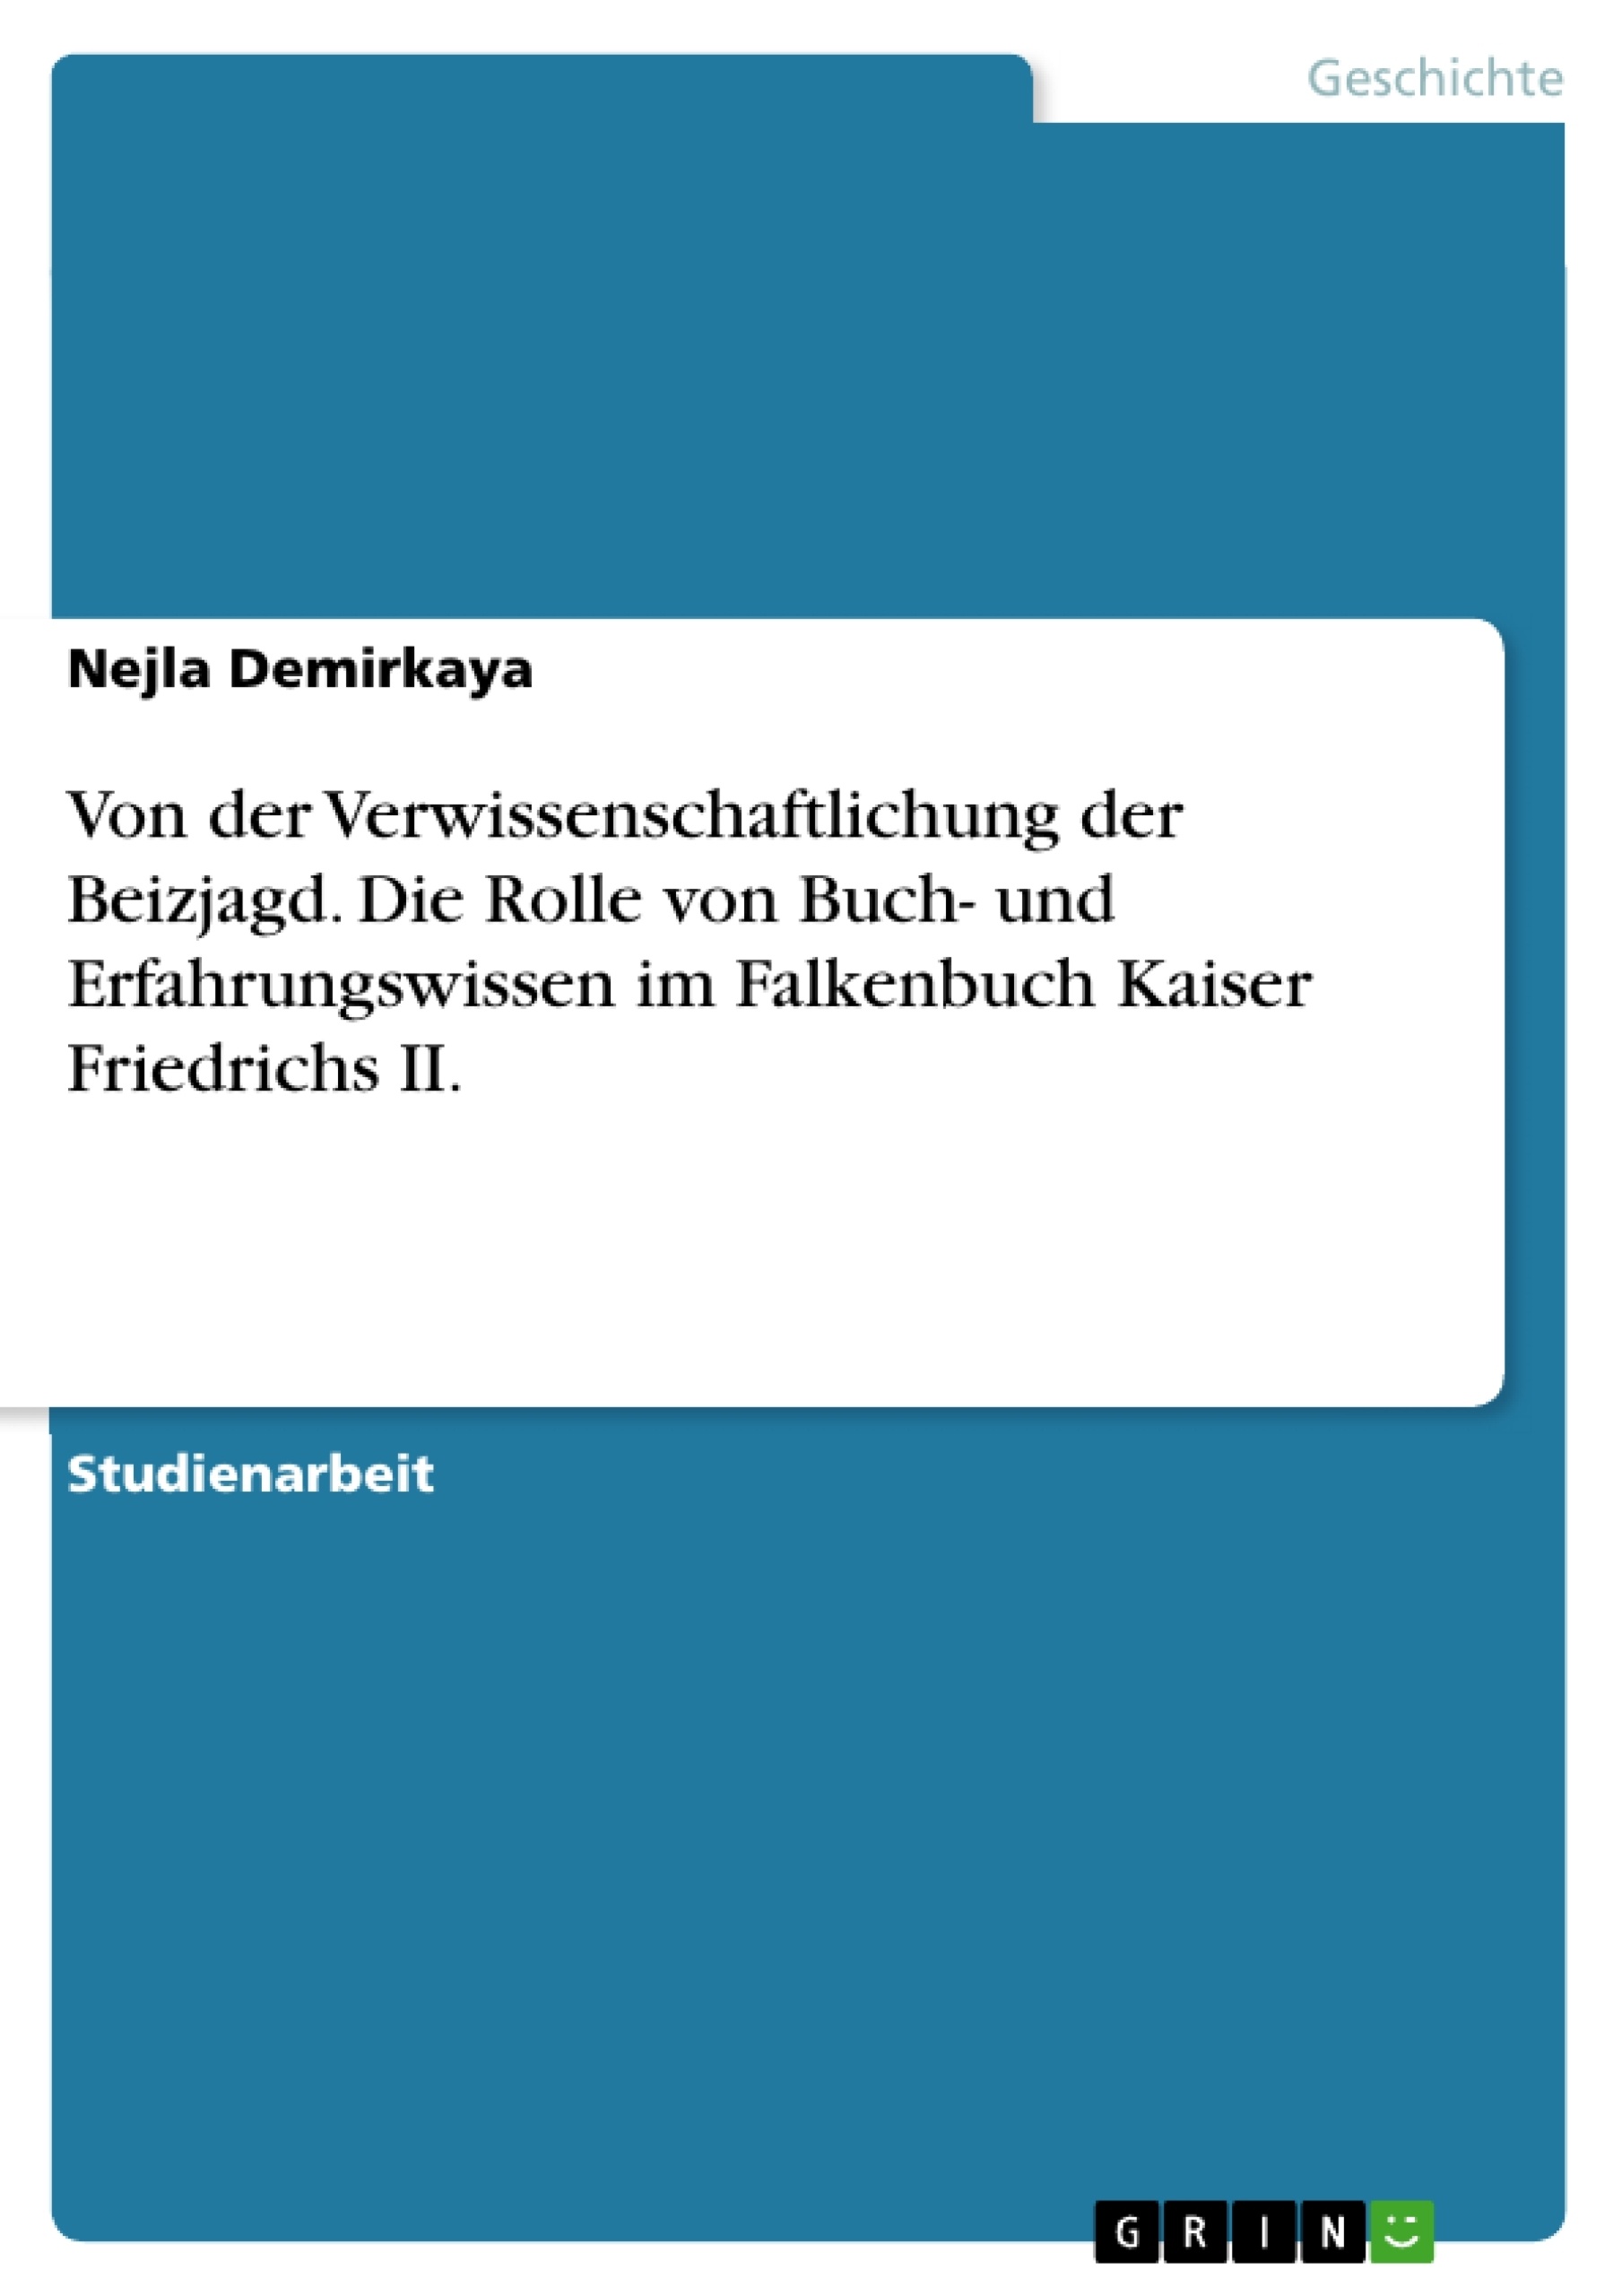 Title: Von der Verwissenschaftlichung der Beizjagd. Die Rolle von Buch- und Erfahrungswissen im Falkenbuch Kaiser Friedrichs II.